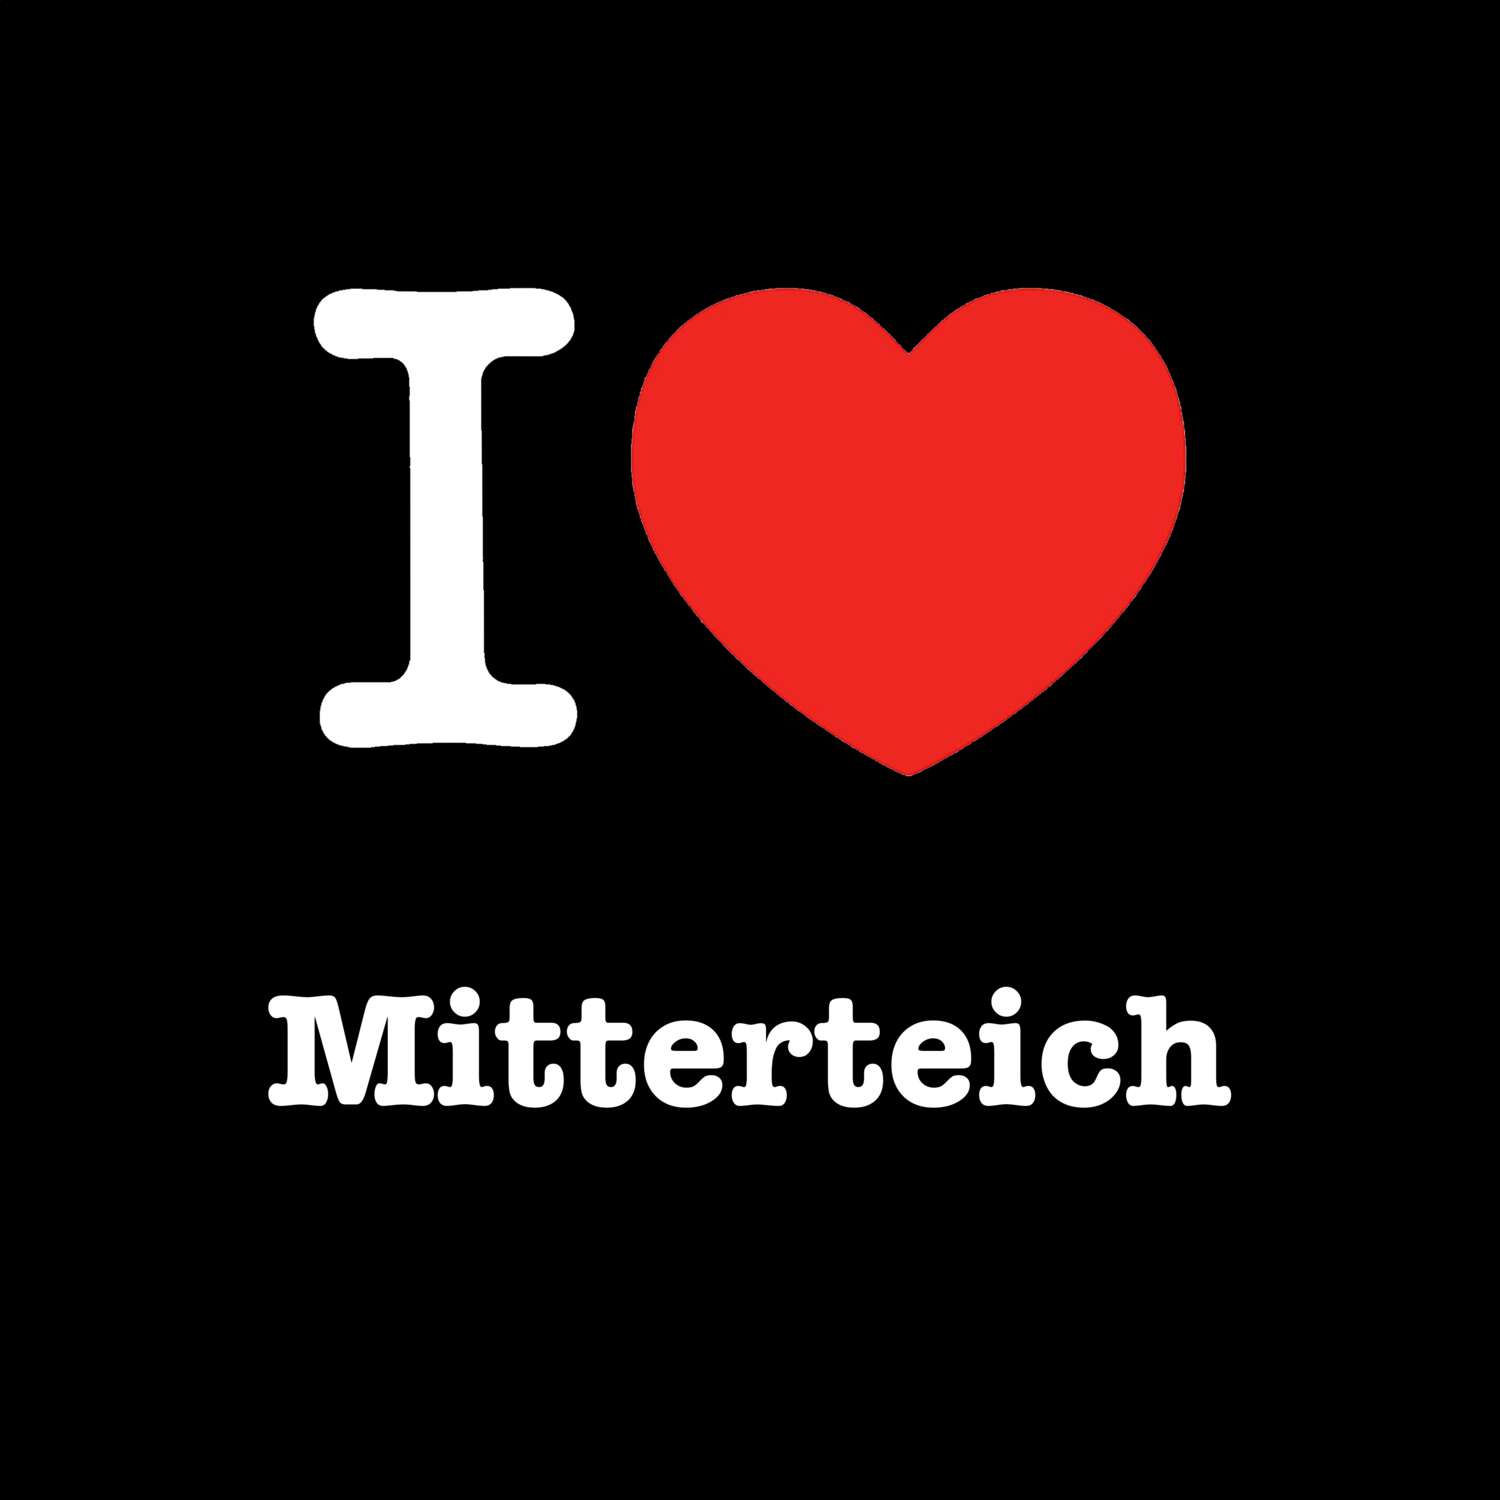 Mitterteich T-Shirt »I love«